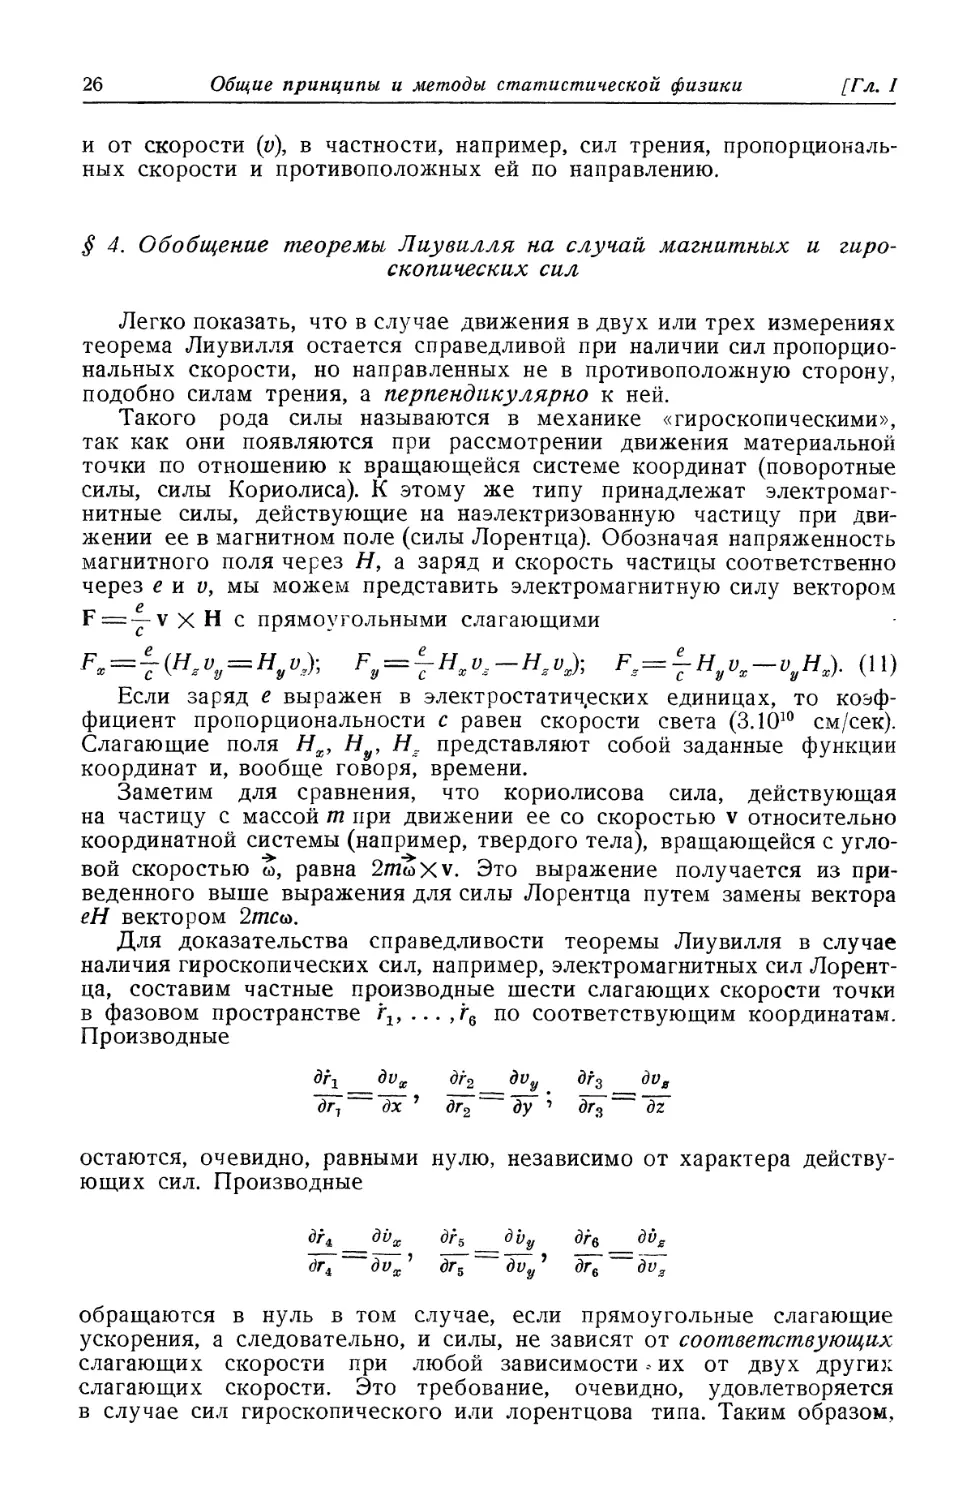 § 4. Обобщение теоремы Лиувилля на случай магнитных и гироскопических сил